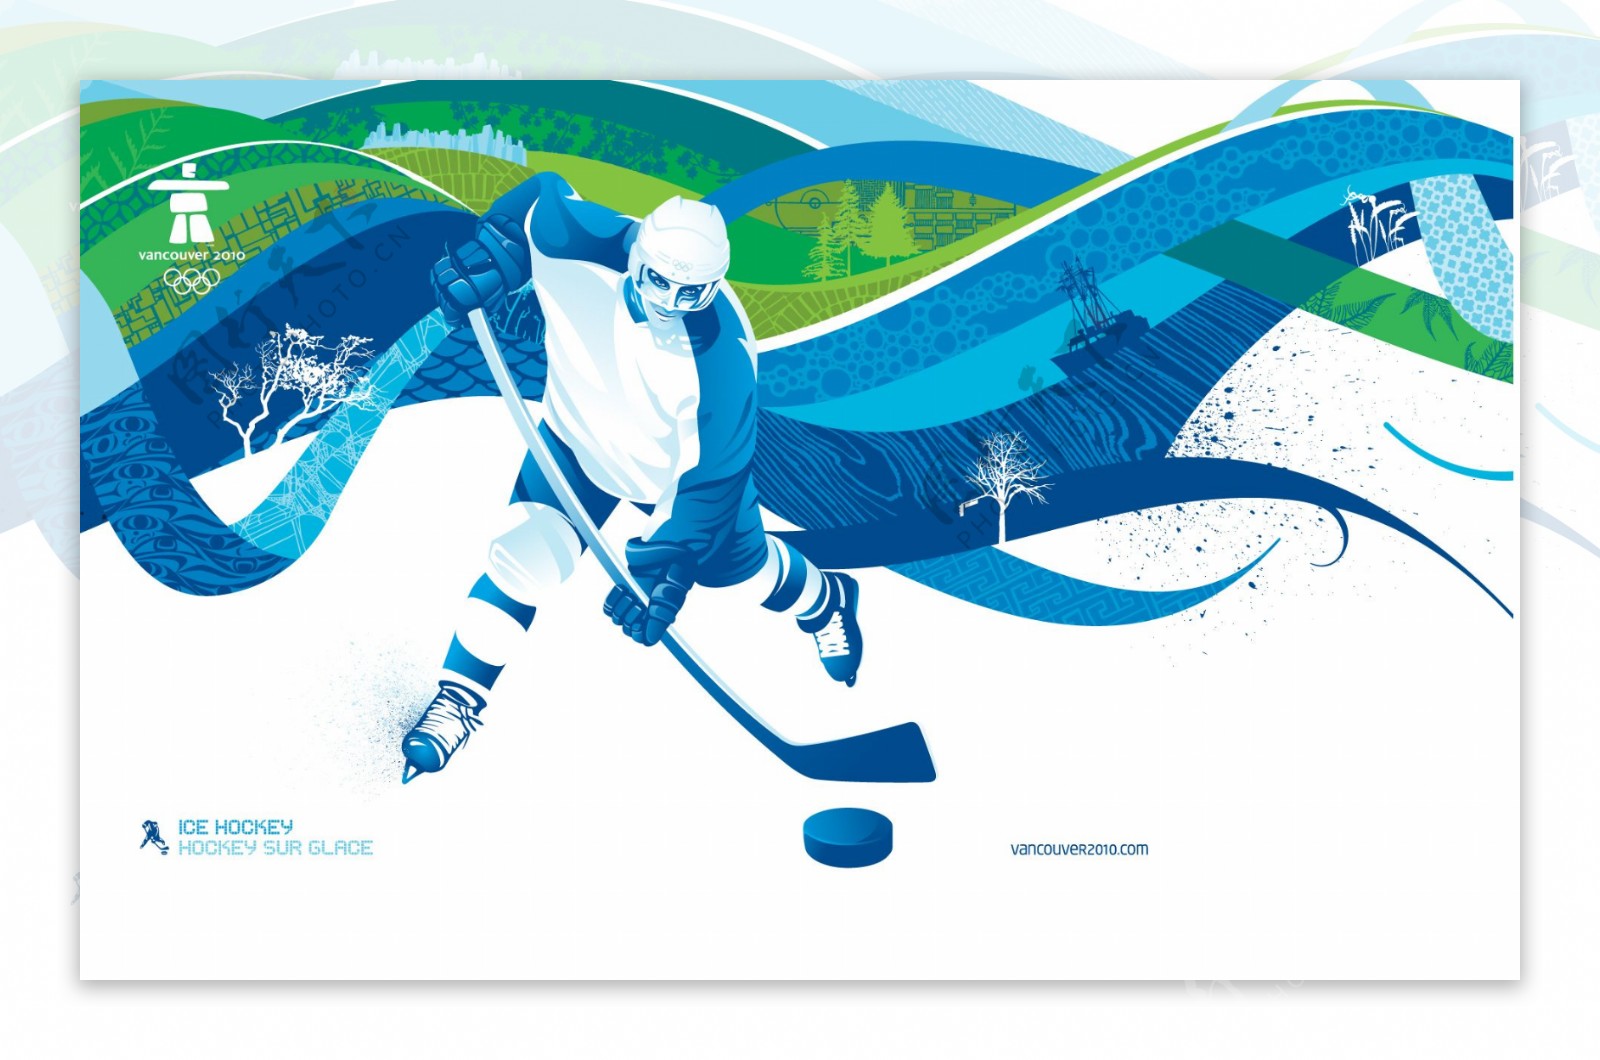 2010温哥华冬季奥运会剪影图片